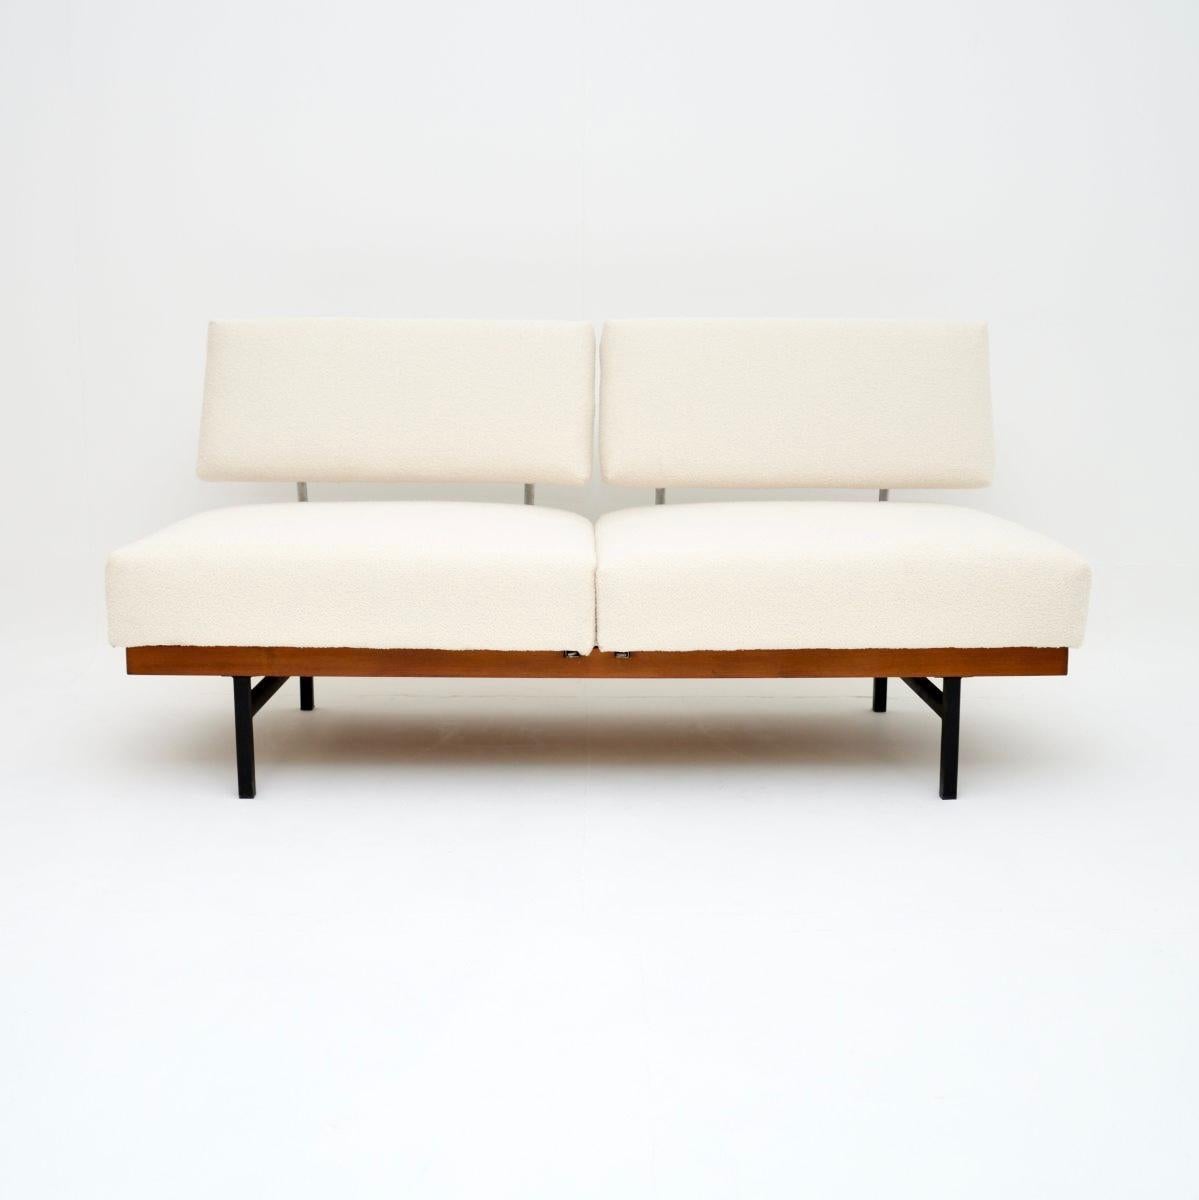 Un canapé-lit vintage élégant et extrêmement bien fabriqué par Wilhelm Knoll. Fabriqué en Allemagne, il date des années 1960.

Sa conception est étonnante : les deux moitiés pivotent et les dossiers s'abaissent pour en faire un lit d'appoint. Il est